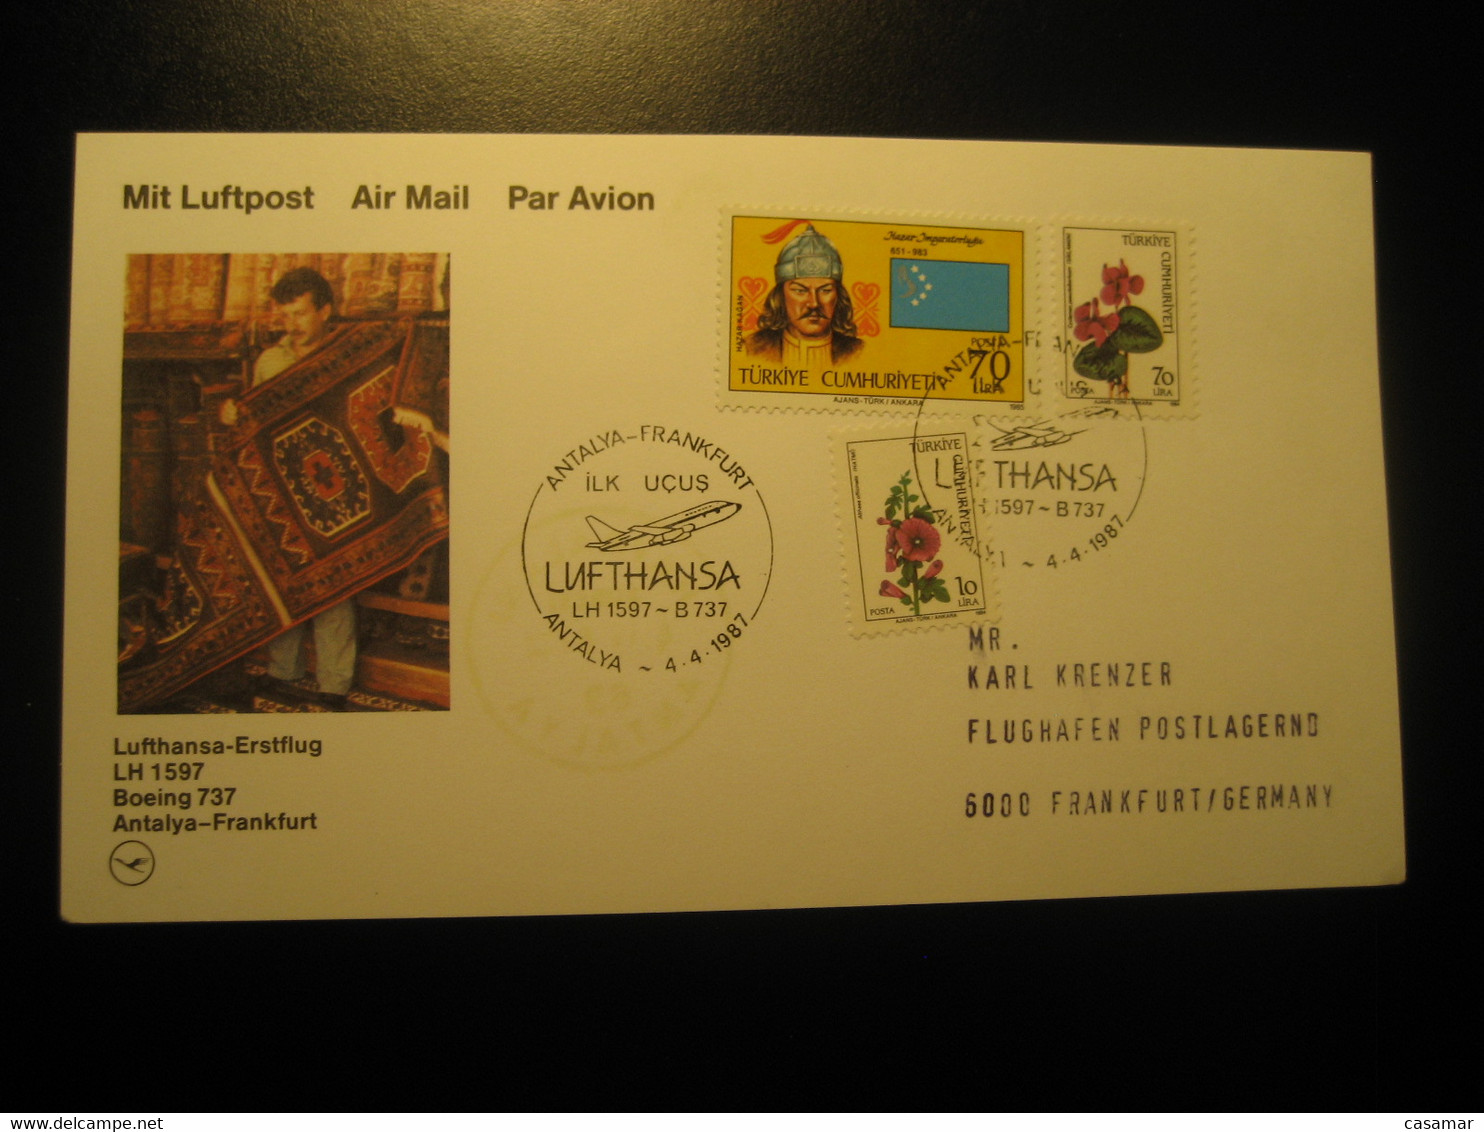 Antalya Frankfurt 1987 Lufthansa Airline Boeing 737 First Flight 3 Stamp Cancel Card Turkey Germany - Luchtpost